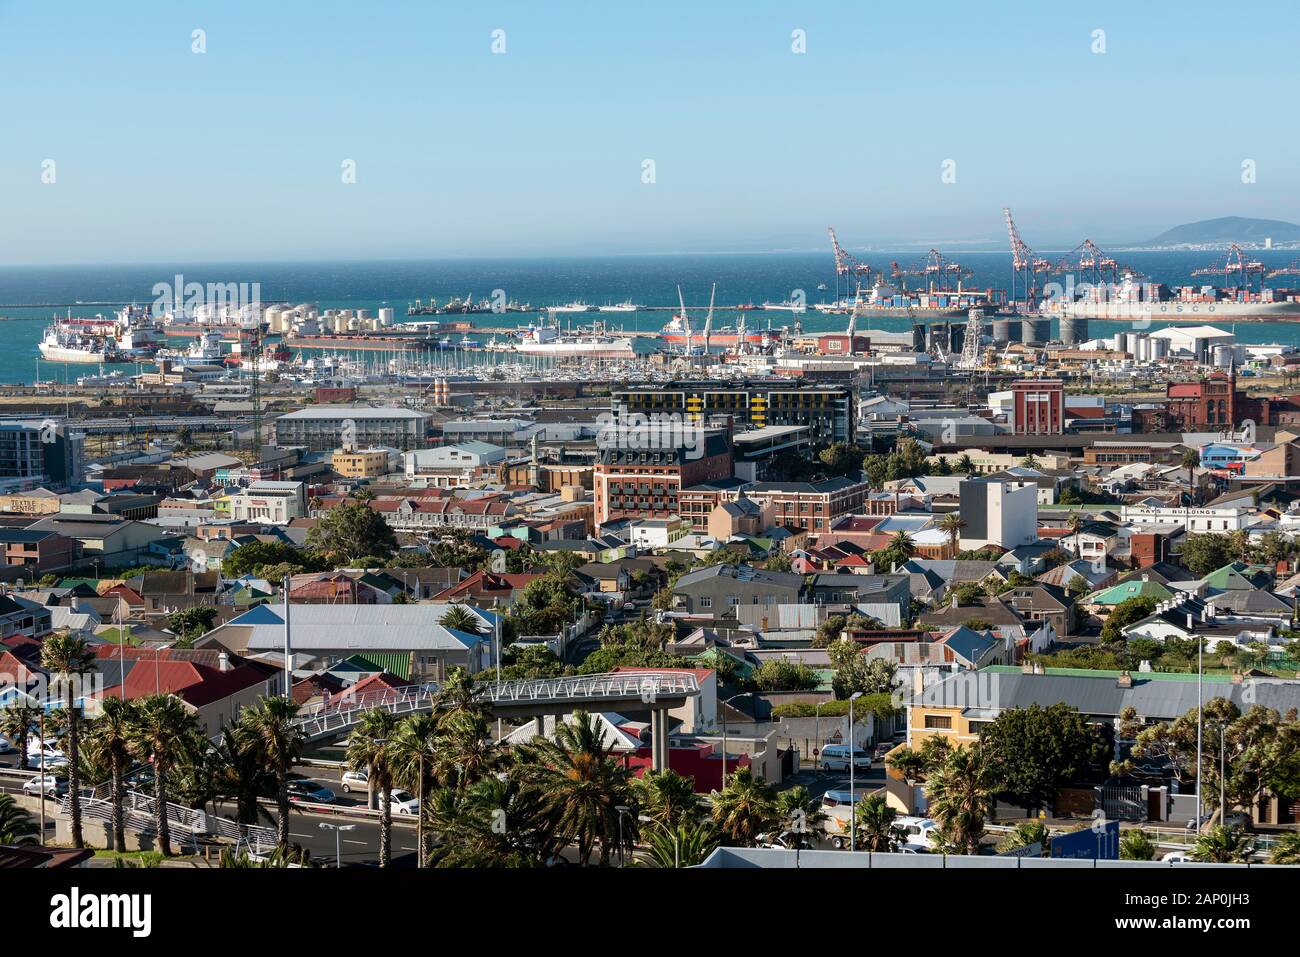 Kapstadt Docks. Dezember 2019. Einen Überblick über Kapstadt Port und Werftenbereich zu Table Bay Hafen und der Westküste. Stockfoto